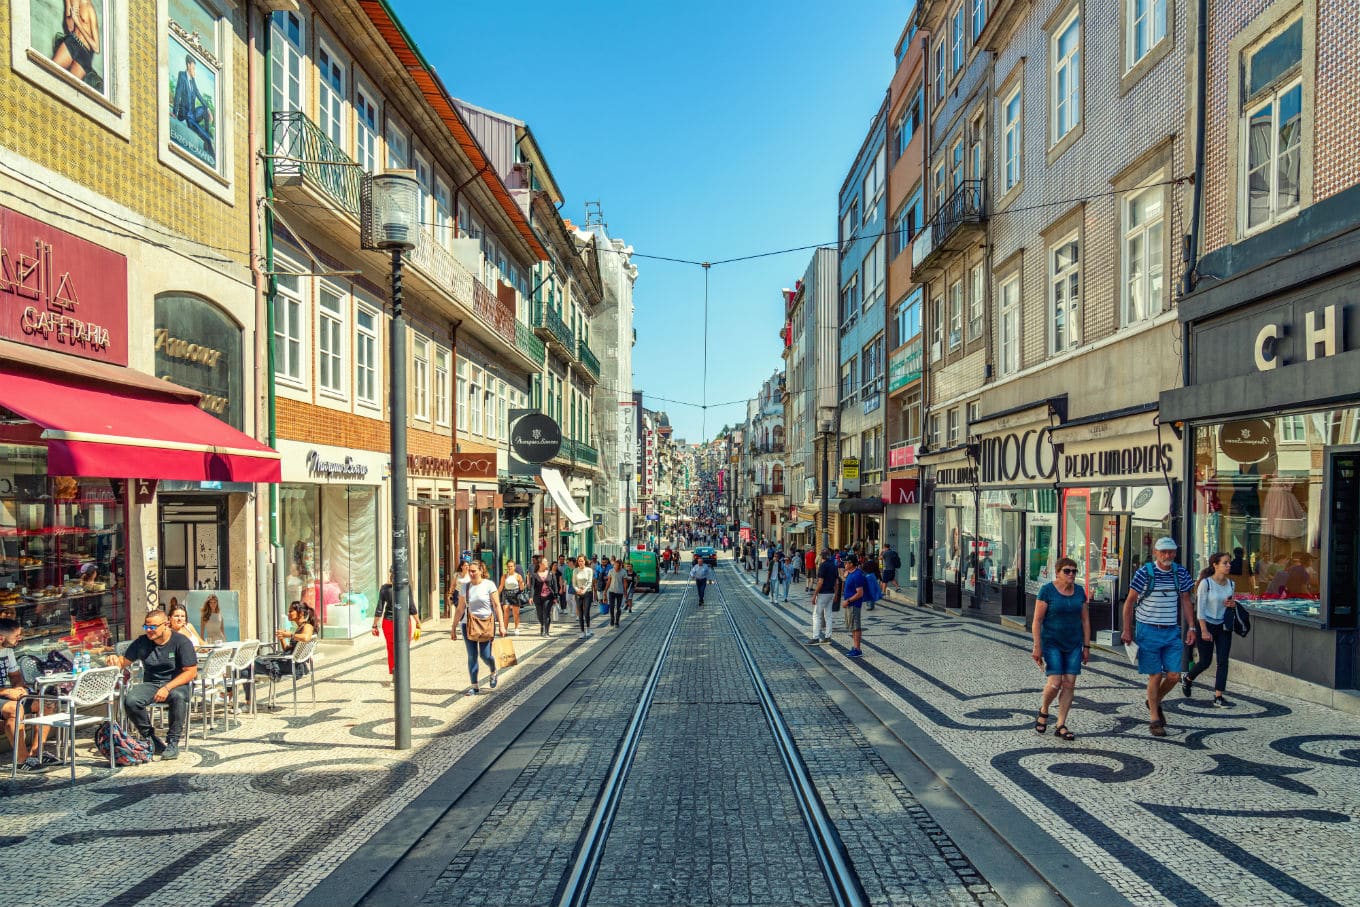 Melhores Lojas de Roupas em Portugal: Roupas Baratas é Com Qualidade -  Explorando Portugal